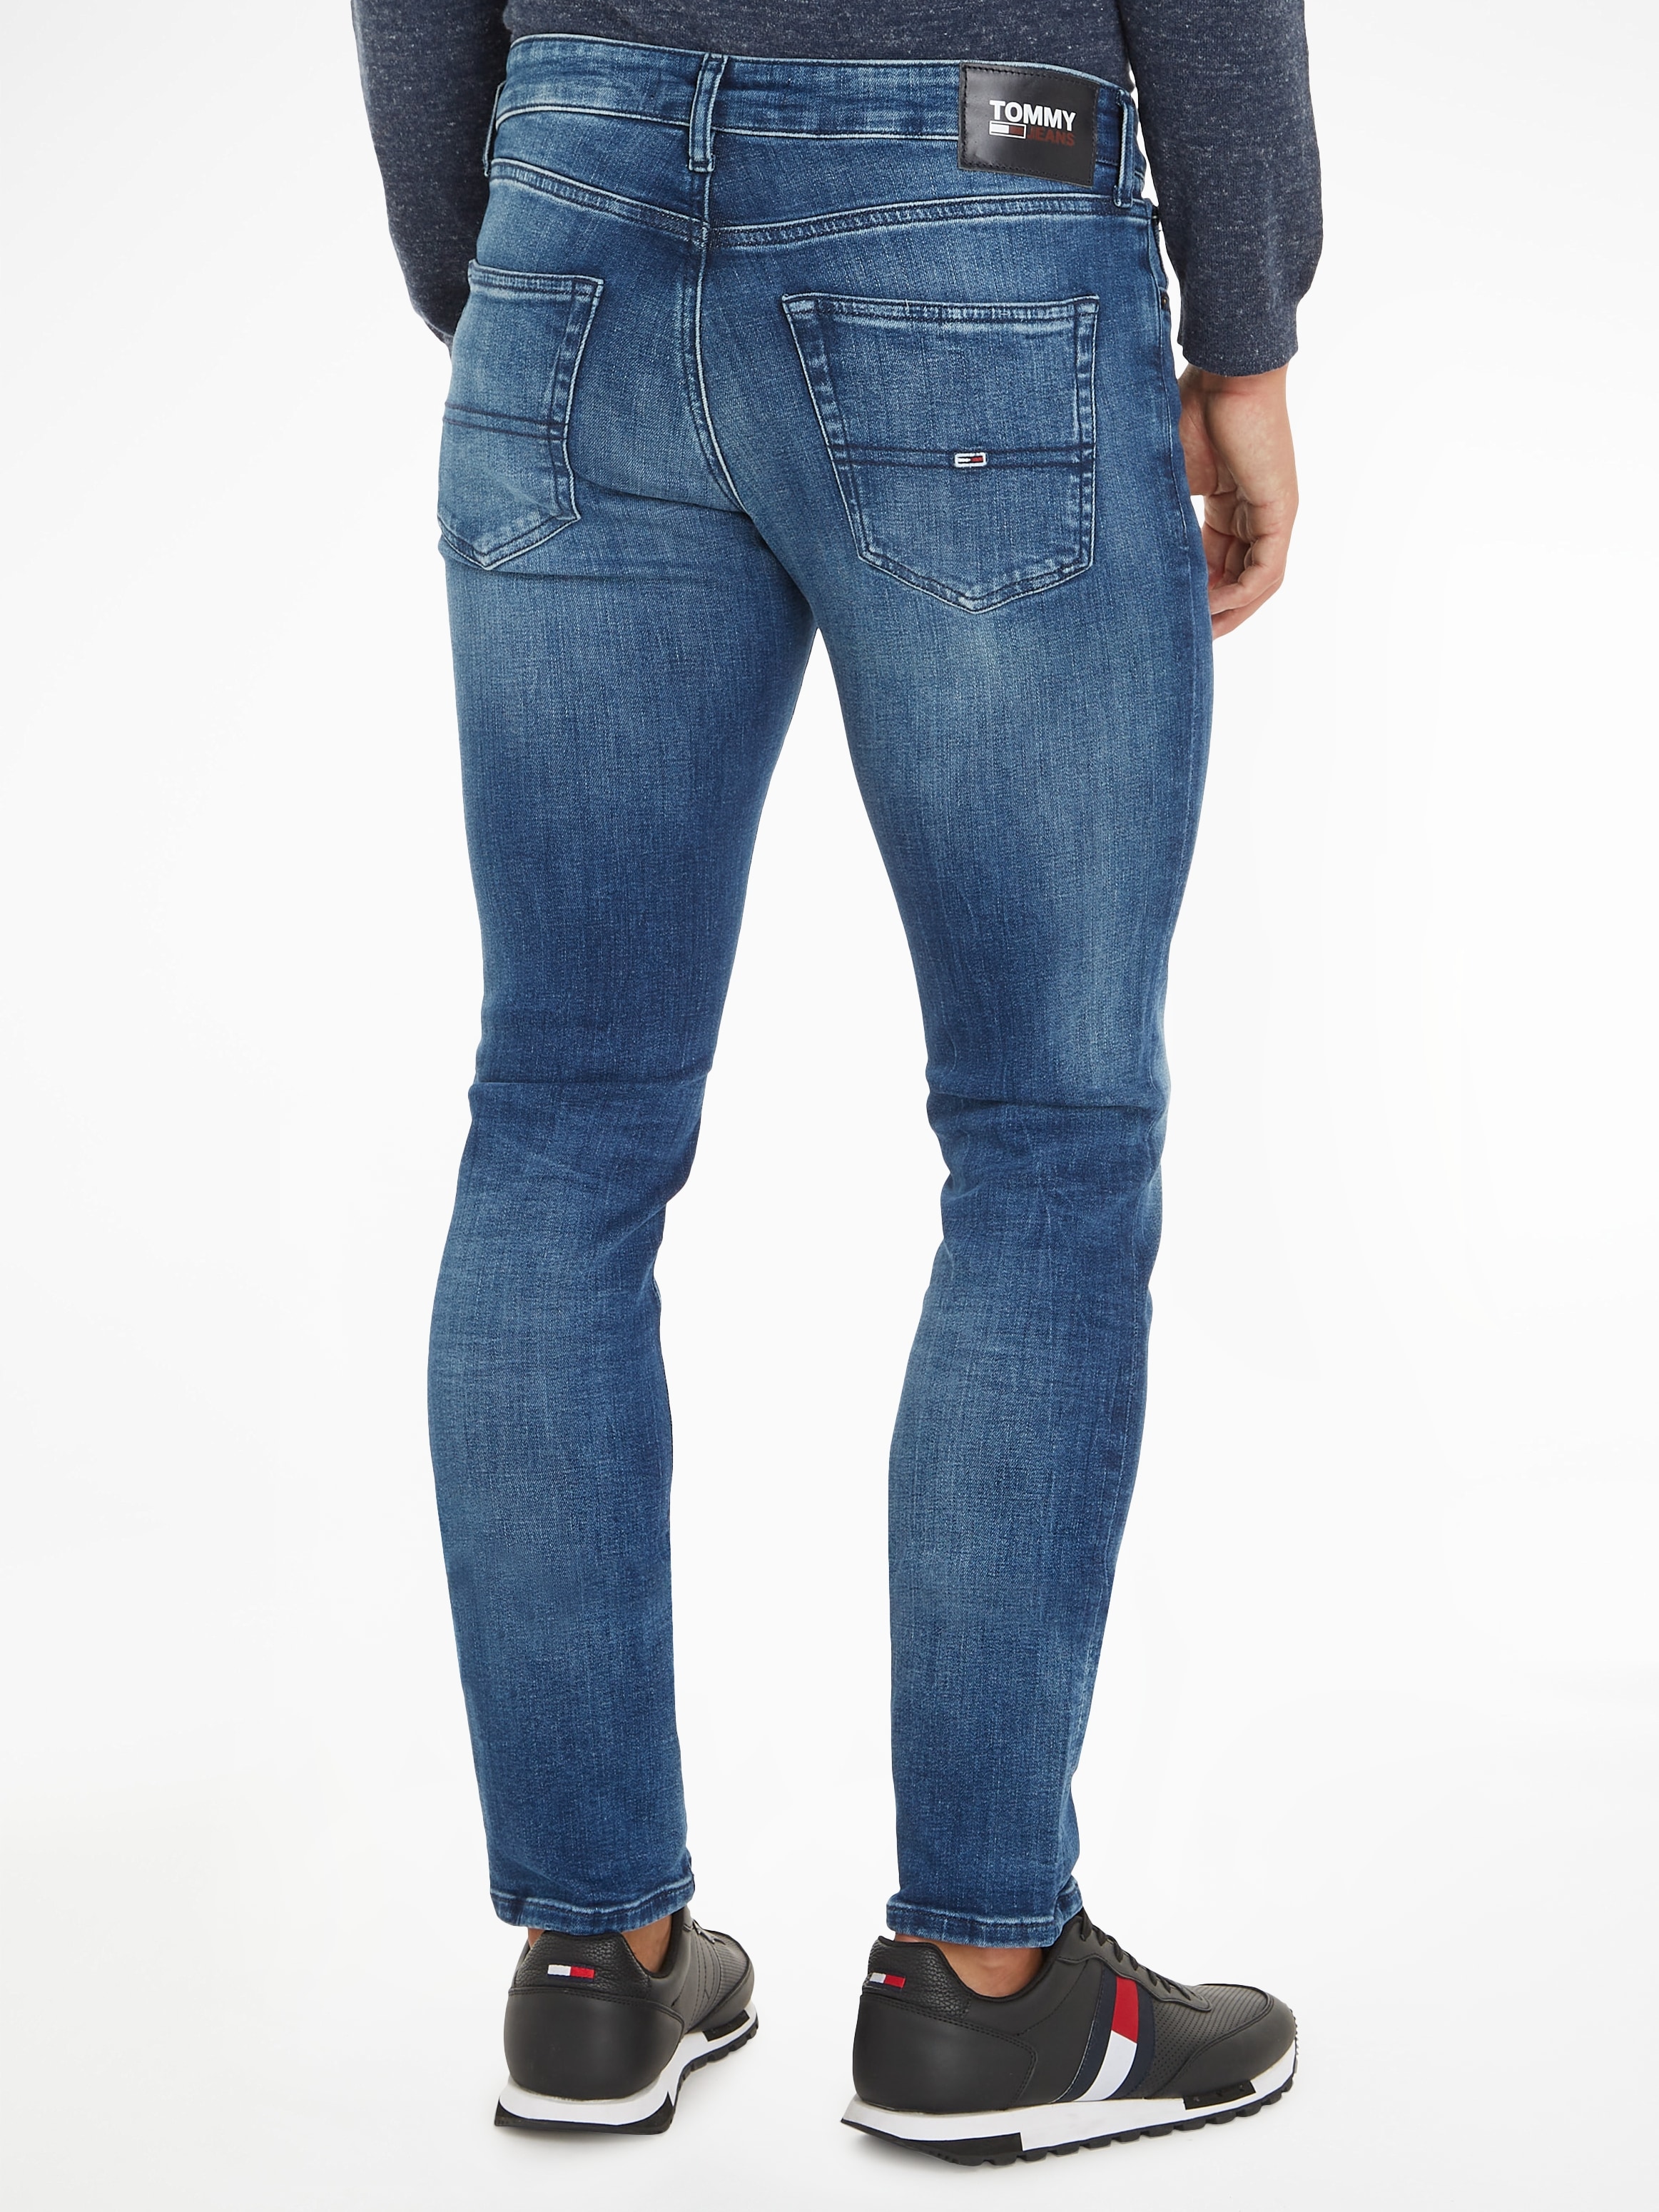 OTTO online Slim-fit-Jeans kaufen bei Jeans »SCANTON Tommy SLIM«